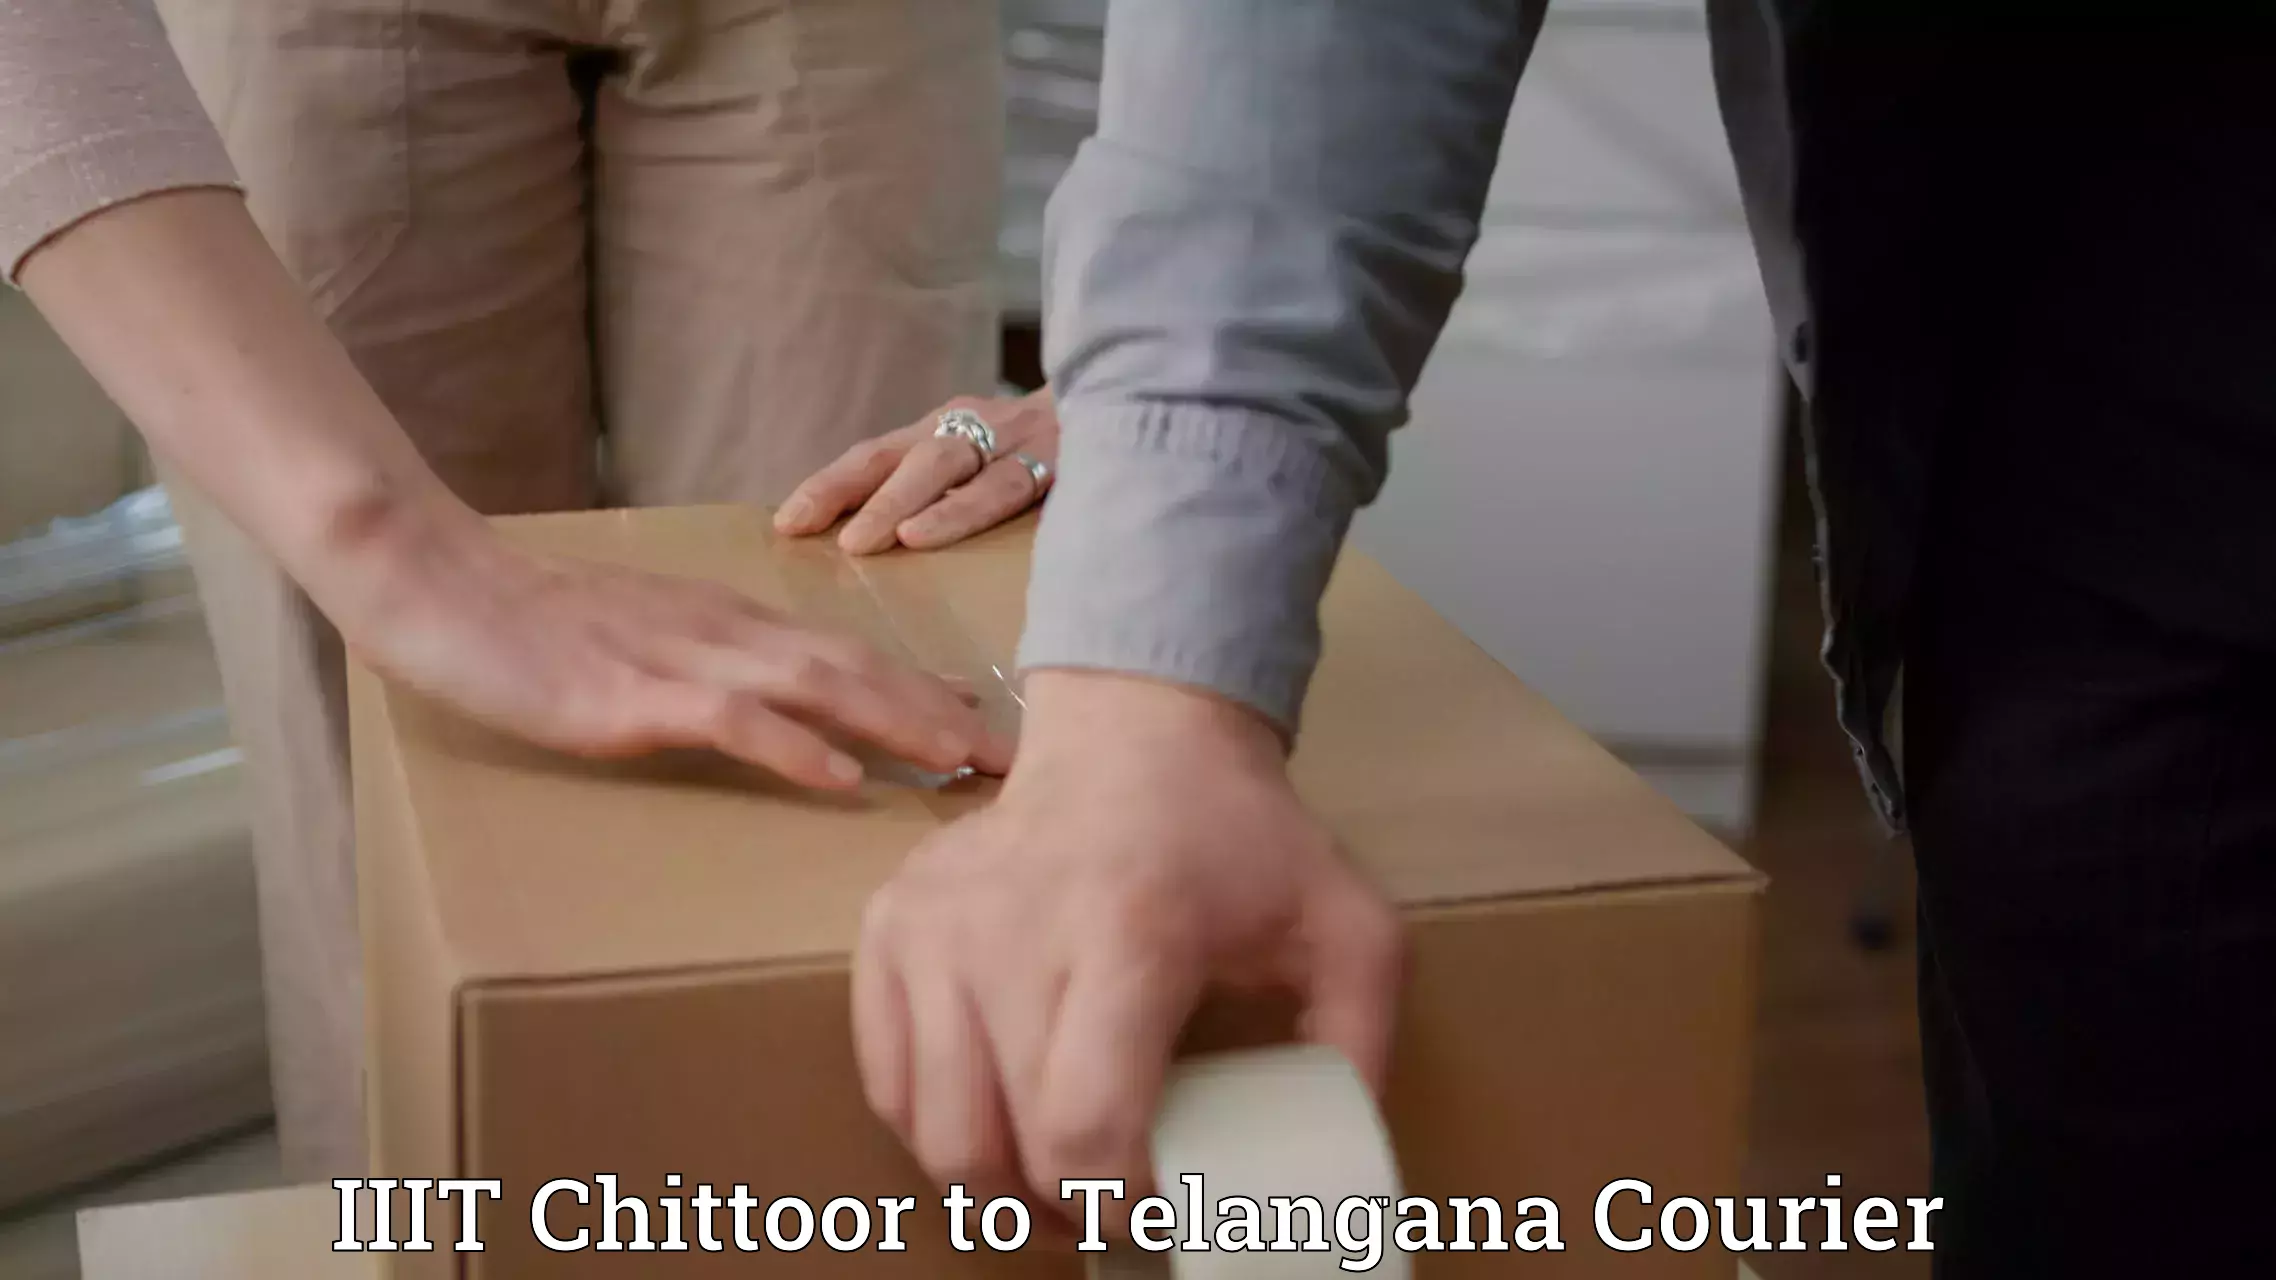 Professional courier handling IIIT Chittoor to Chintoor